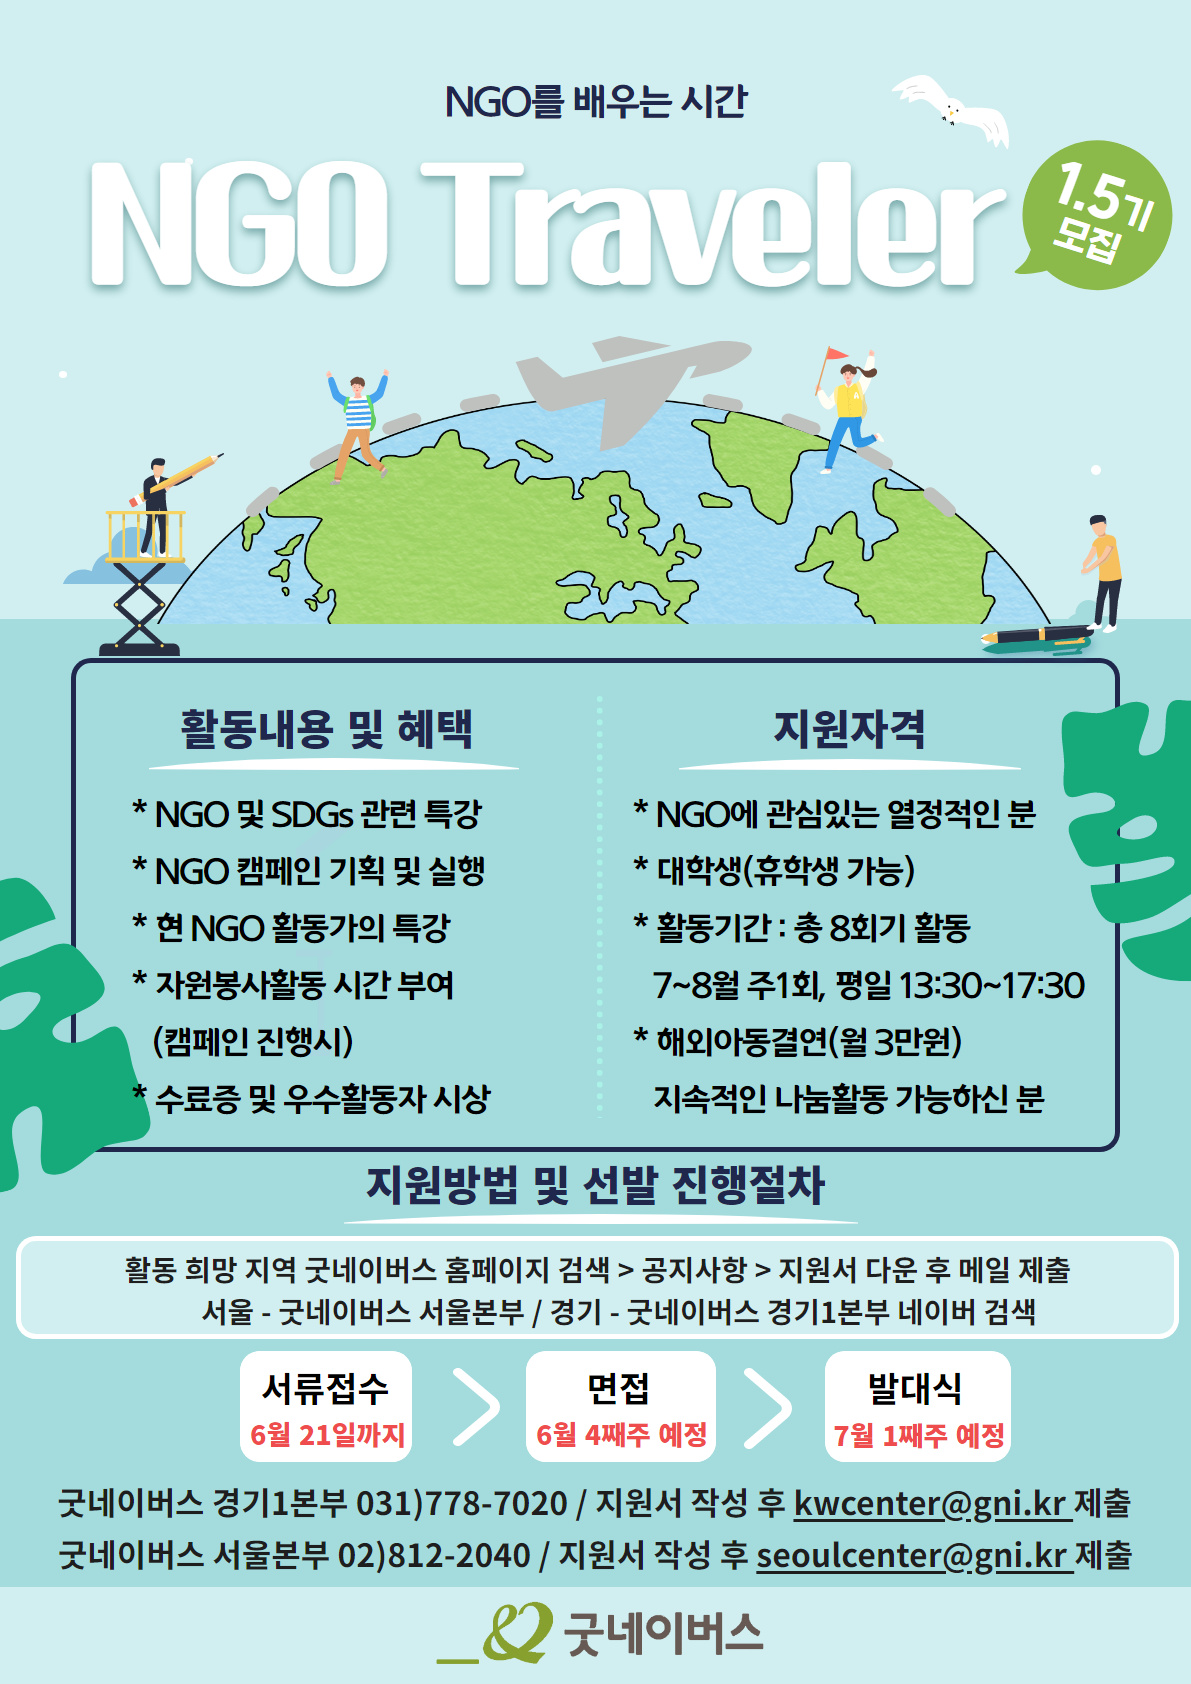 [굿네이버스]NGO를 배우는 시간 NGO Traveler 1.5기 모집 